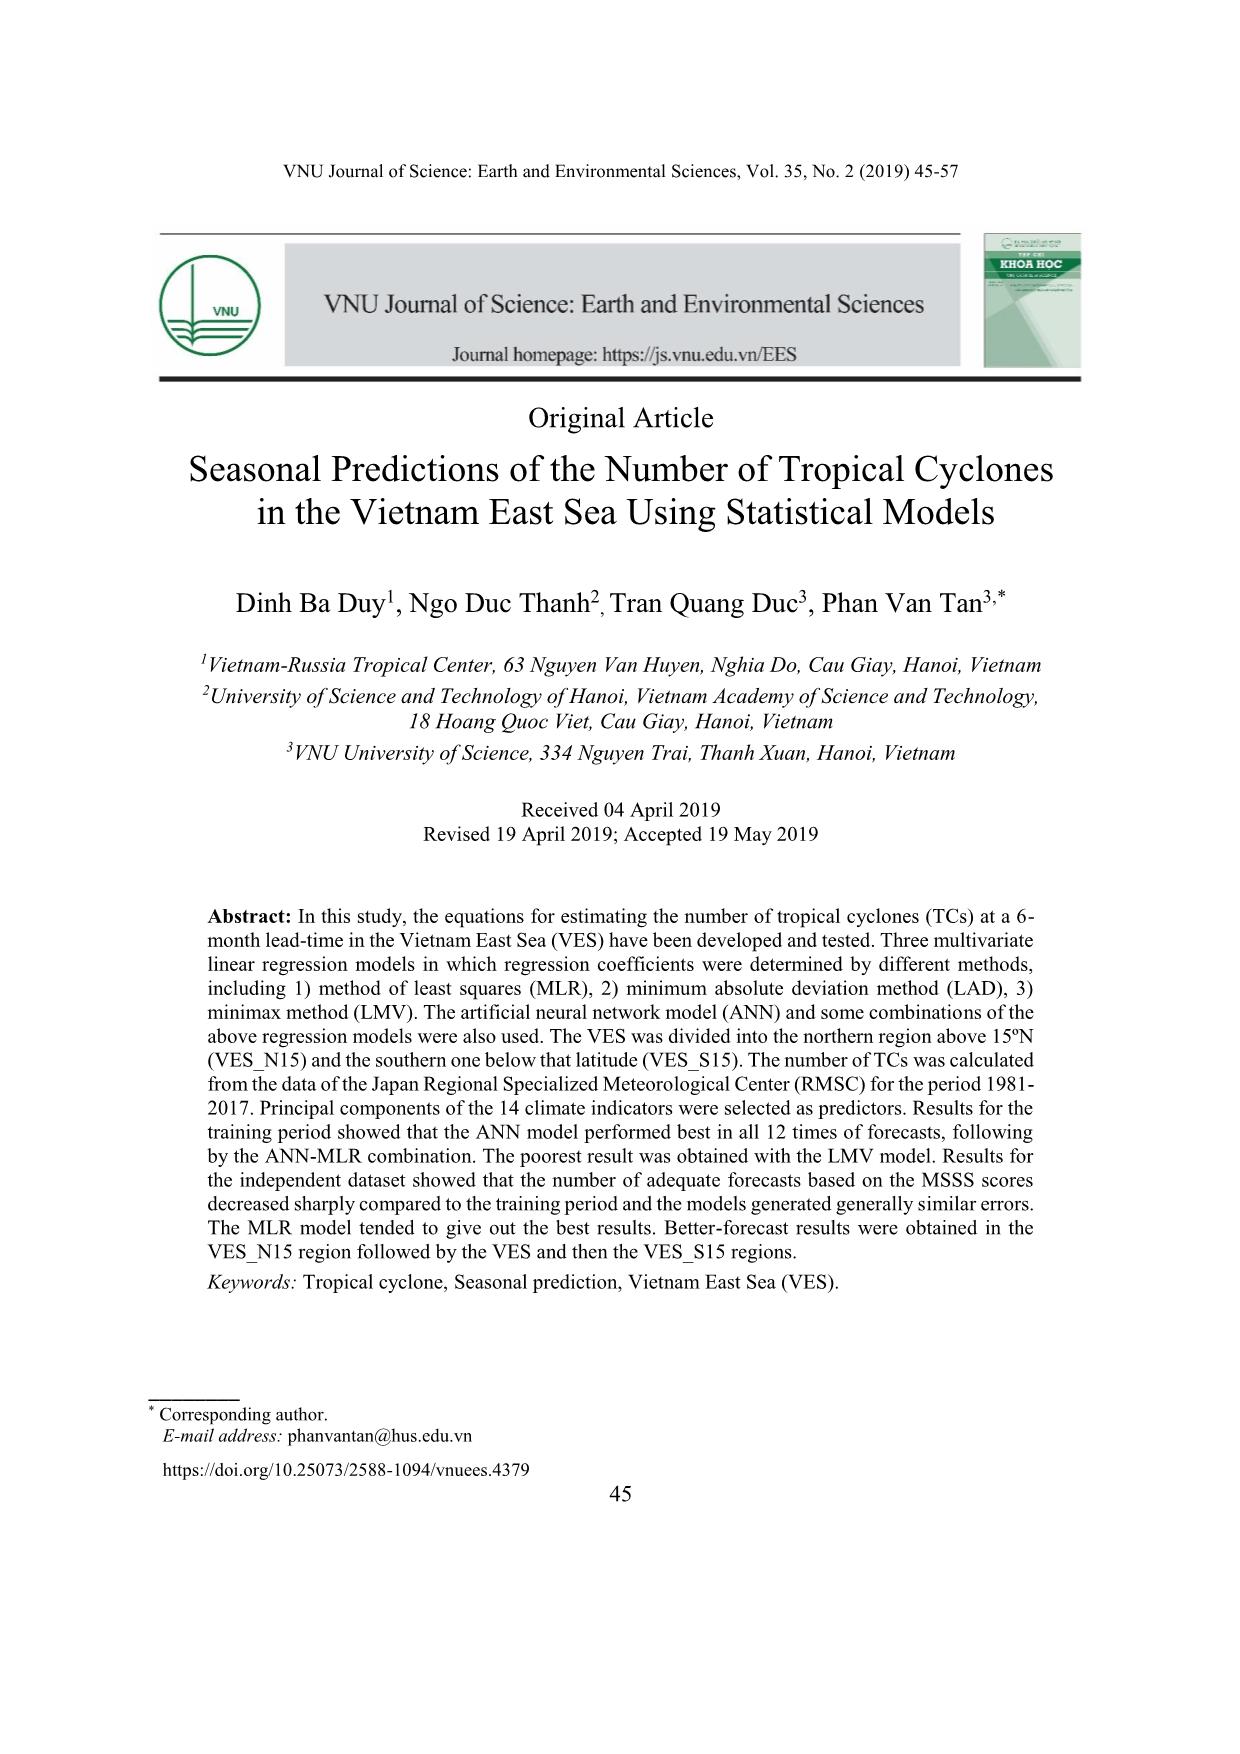 Dự báo hạn mùa số lượng xoáy thuận nhiệt đới trên Biển Đông bằng các mô hình thống kê trang 1